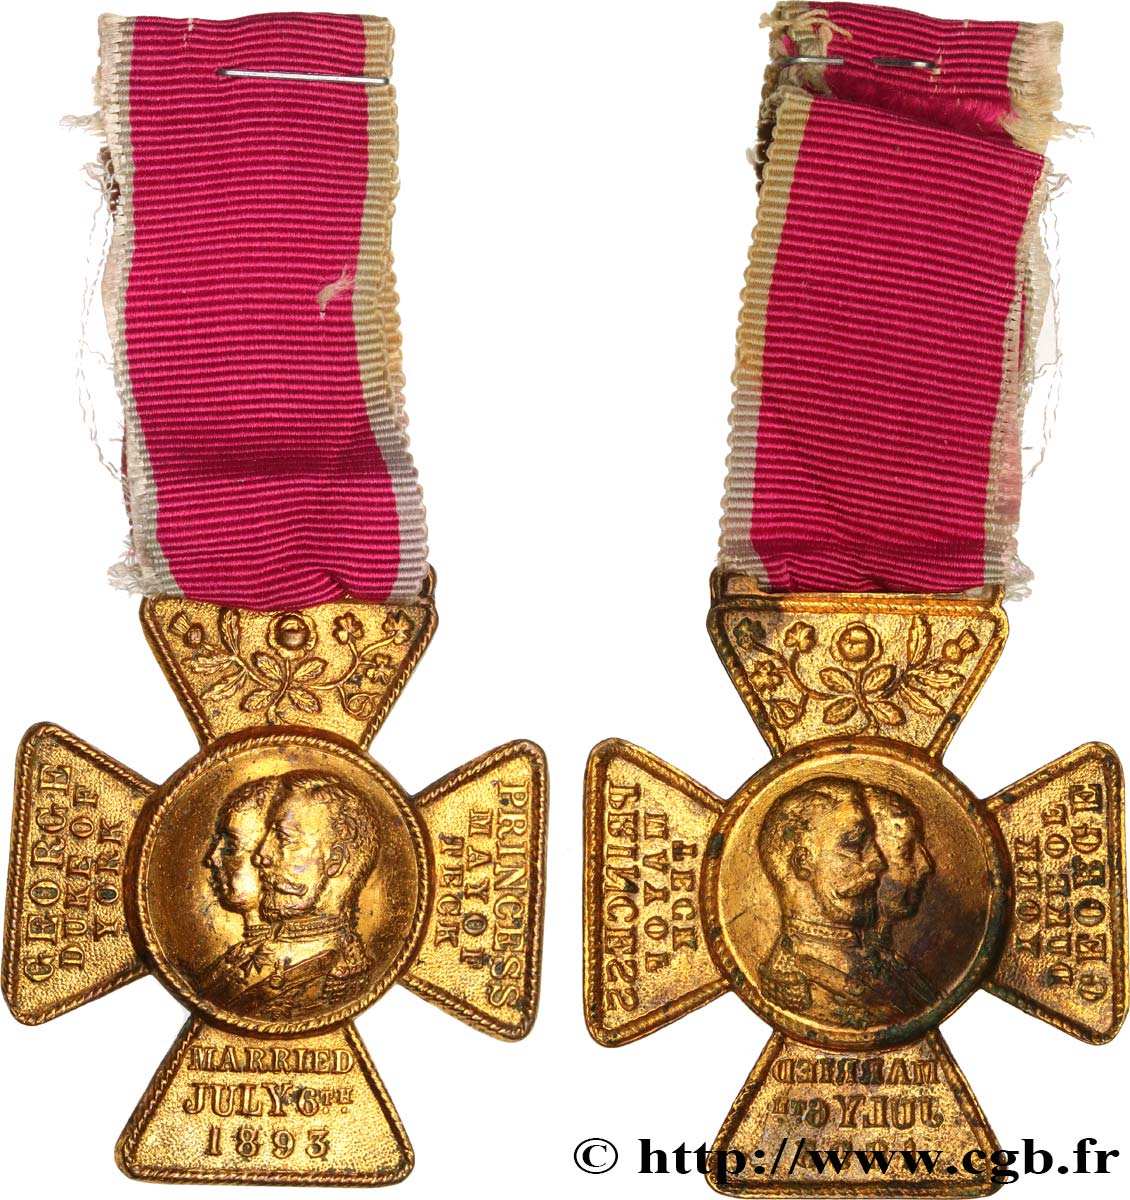 ENGLAND - GEORGE V Médaille, Mariage de la Princesse Victoria de teck avec le Prince George, duc d’York XF